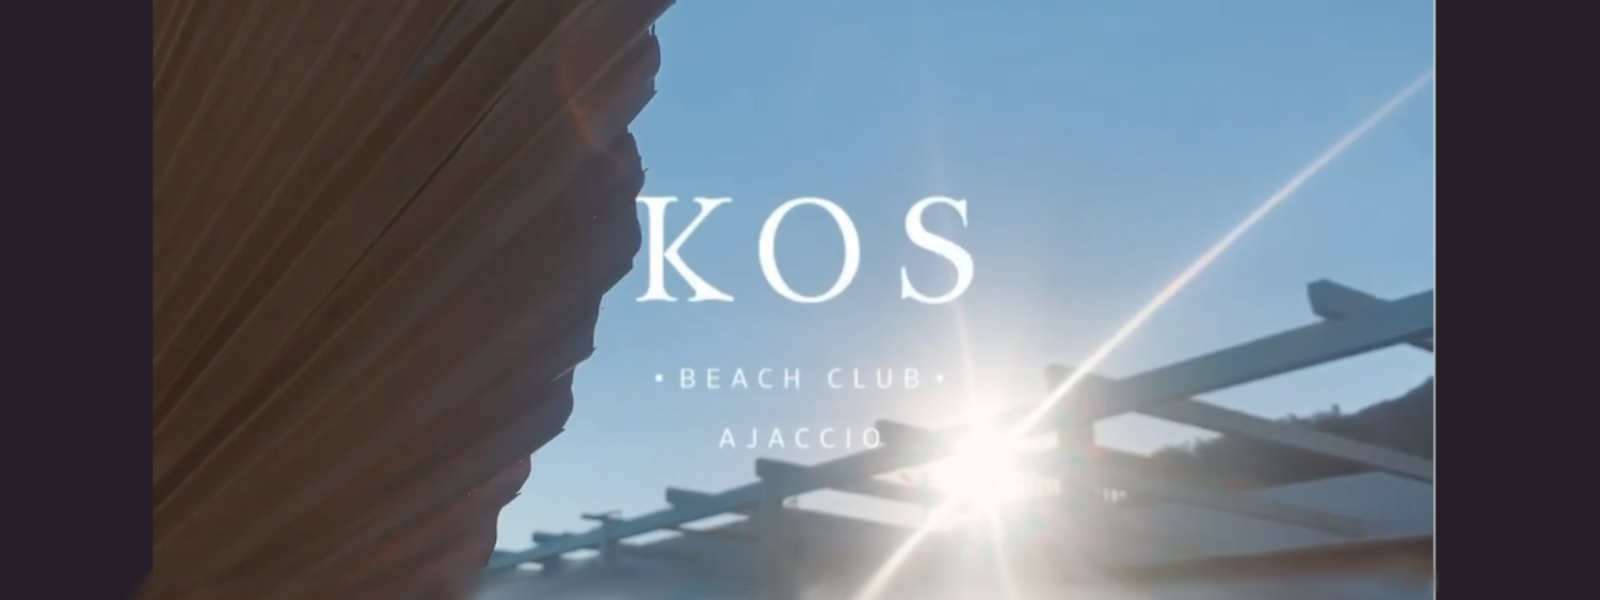 KOS BEACH CLUB image header